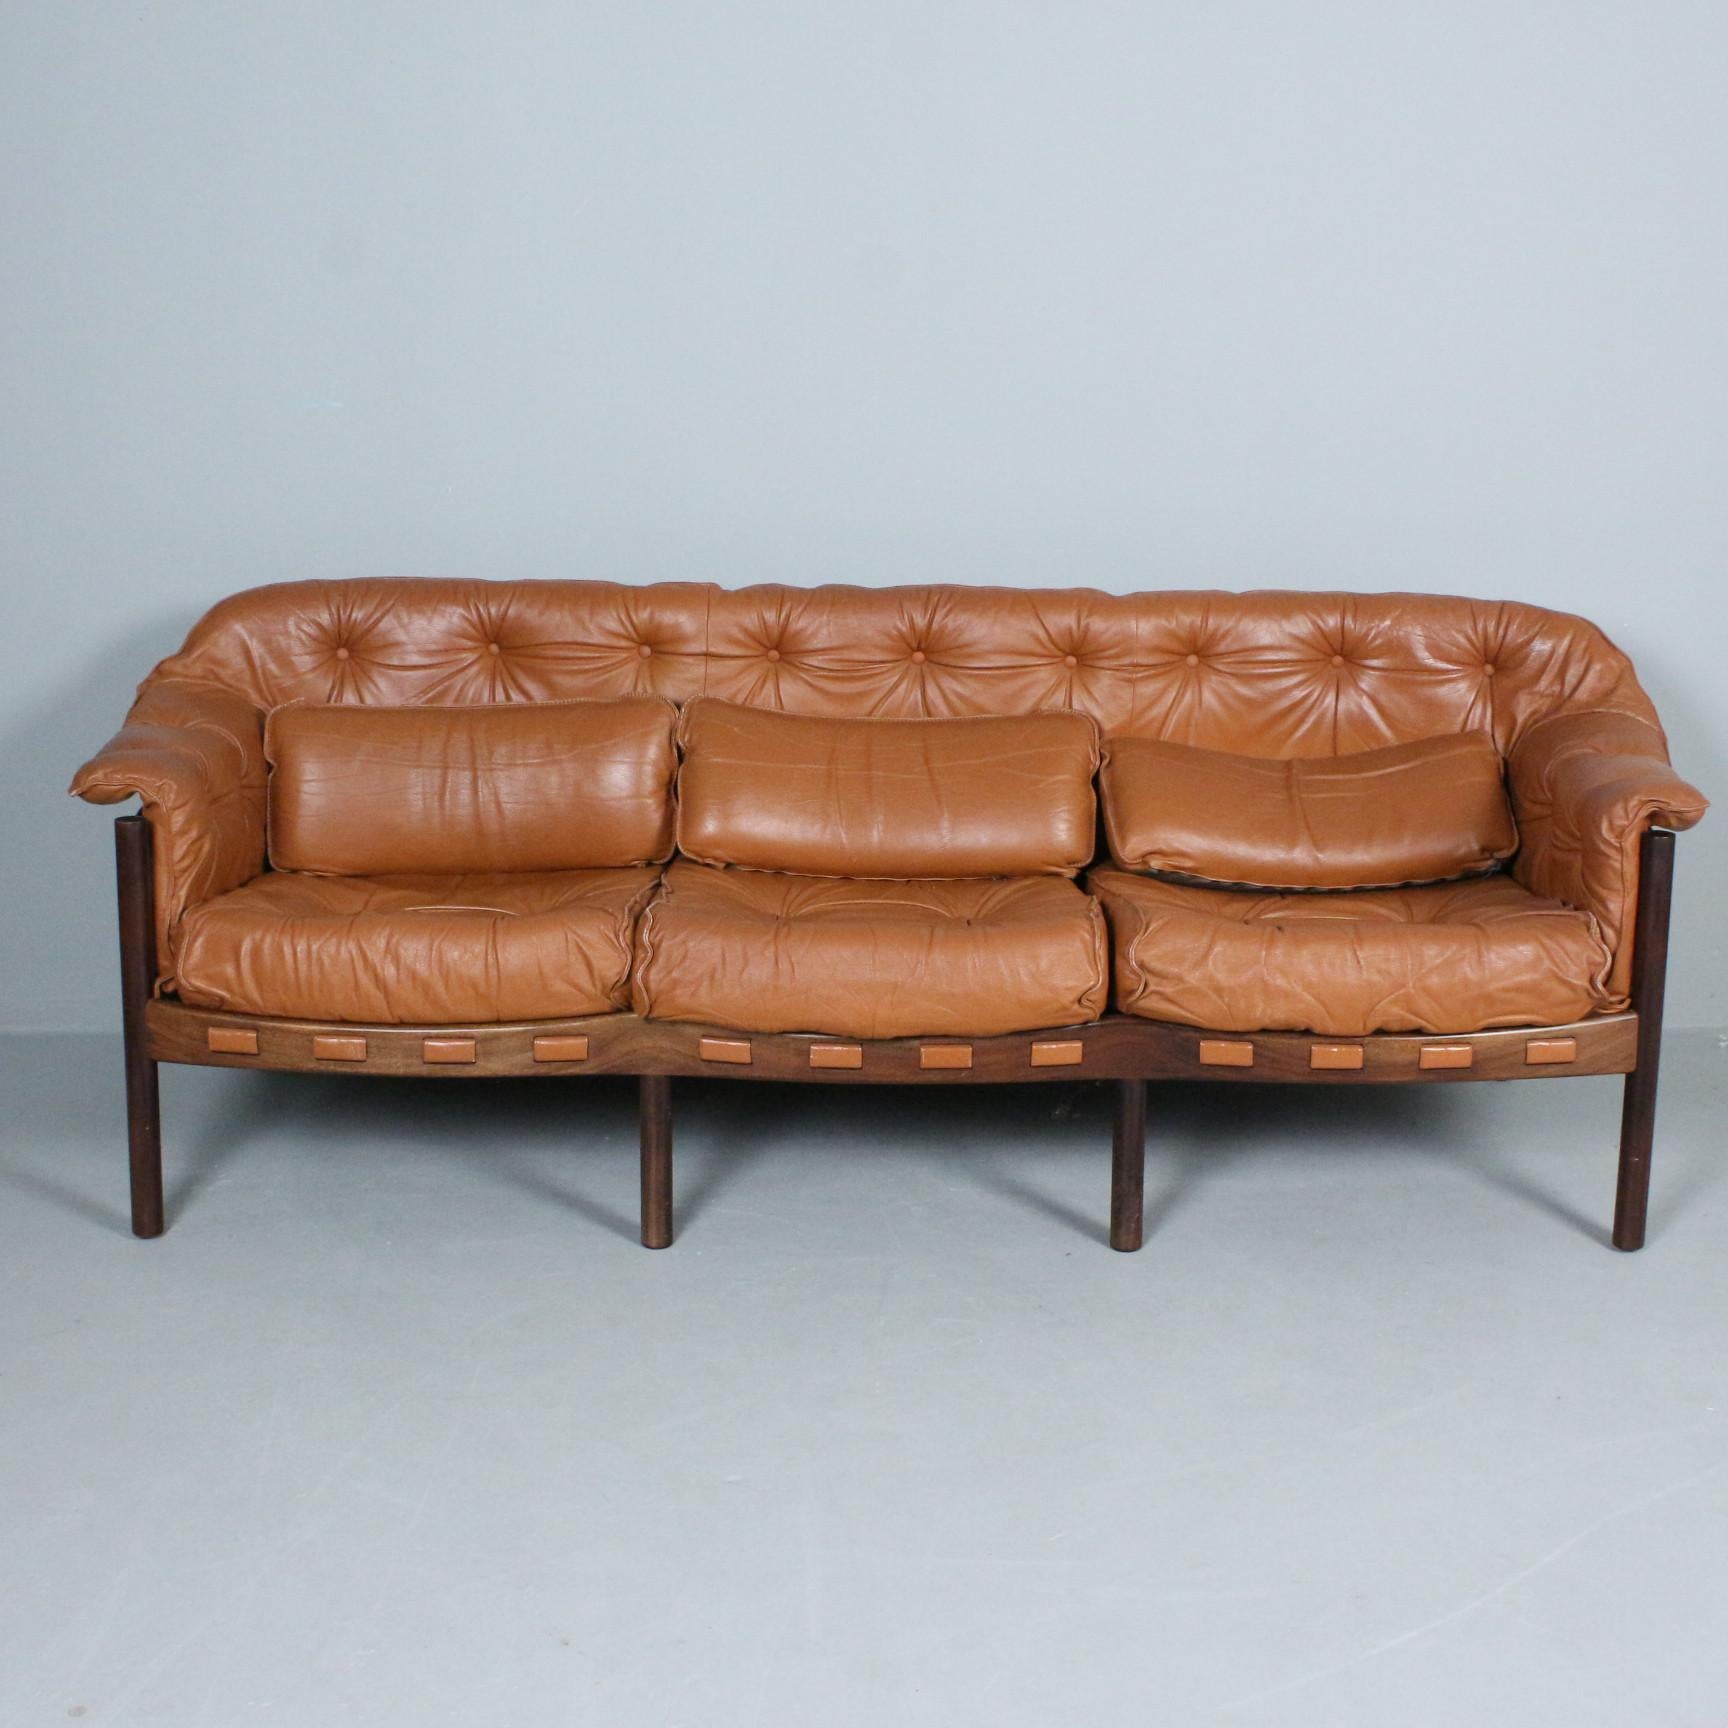 Canapé 3 places Arne Norells  en cuir brun et bois pour Coja fabriqué en Suède vers 1960
Bon état général,
 2 modèles de fauteuils/loungechairs assortis disponibles
Prix pour 1 canapé
